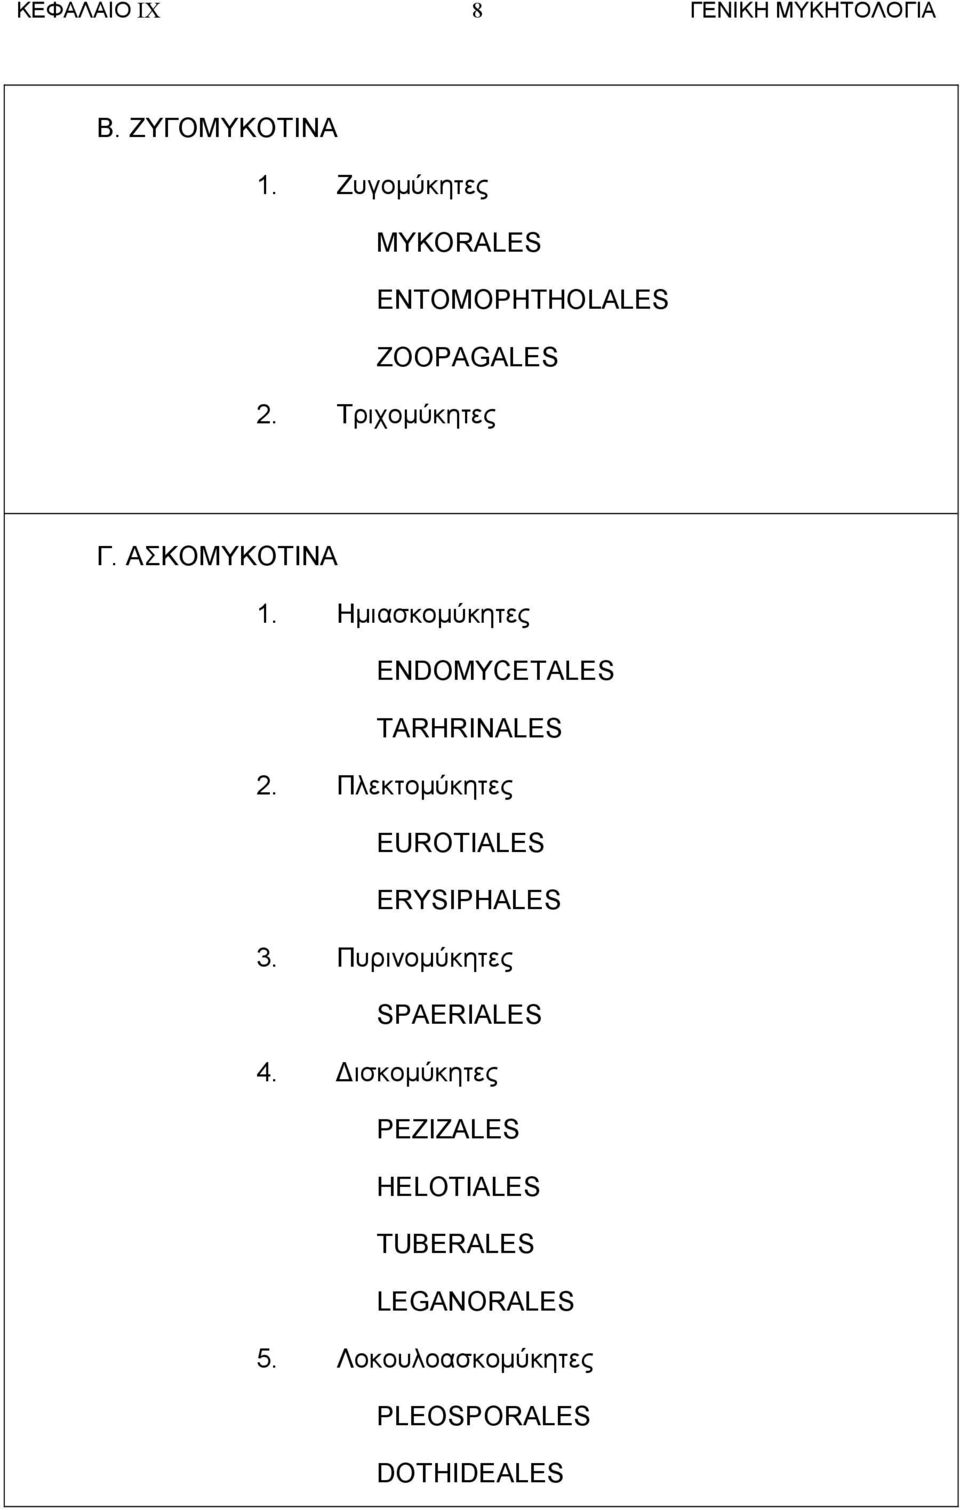 Ηµιασκοµύκητες ENDOMYCETALES TARHRINALES 2. Πλεκτοµύκητες EUROTIALES ERYSIPHALES 3.